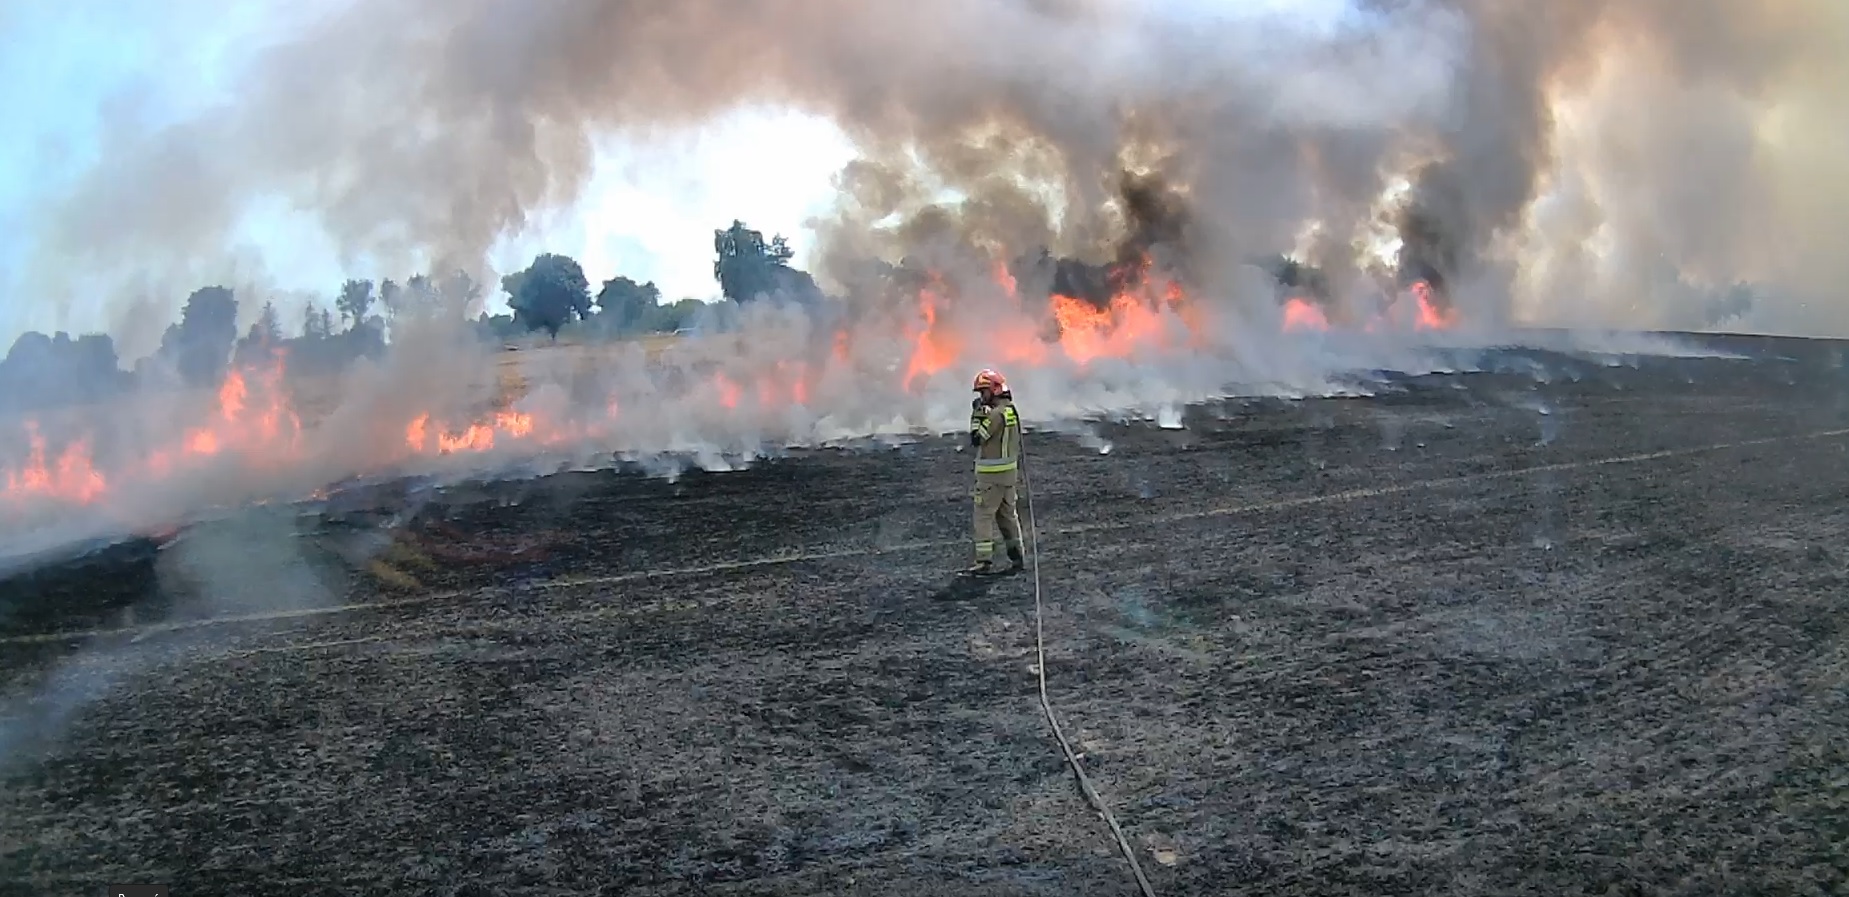 Ogromny pożar zboża. Spłonęło 6 hektarów jęczmienia (zdjęcia)